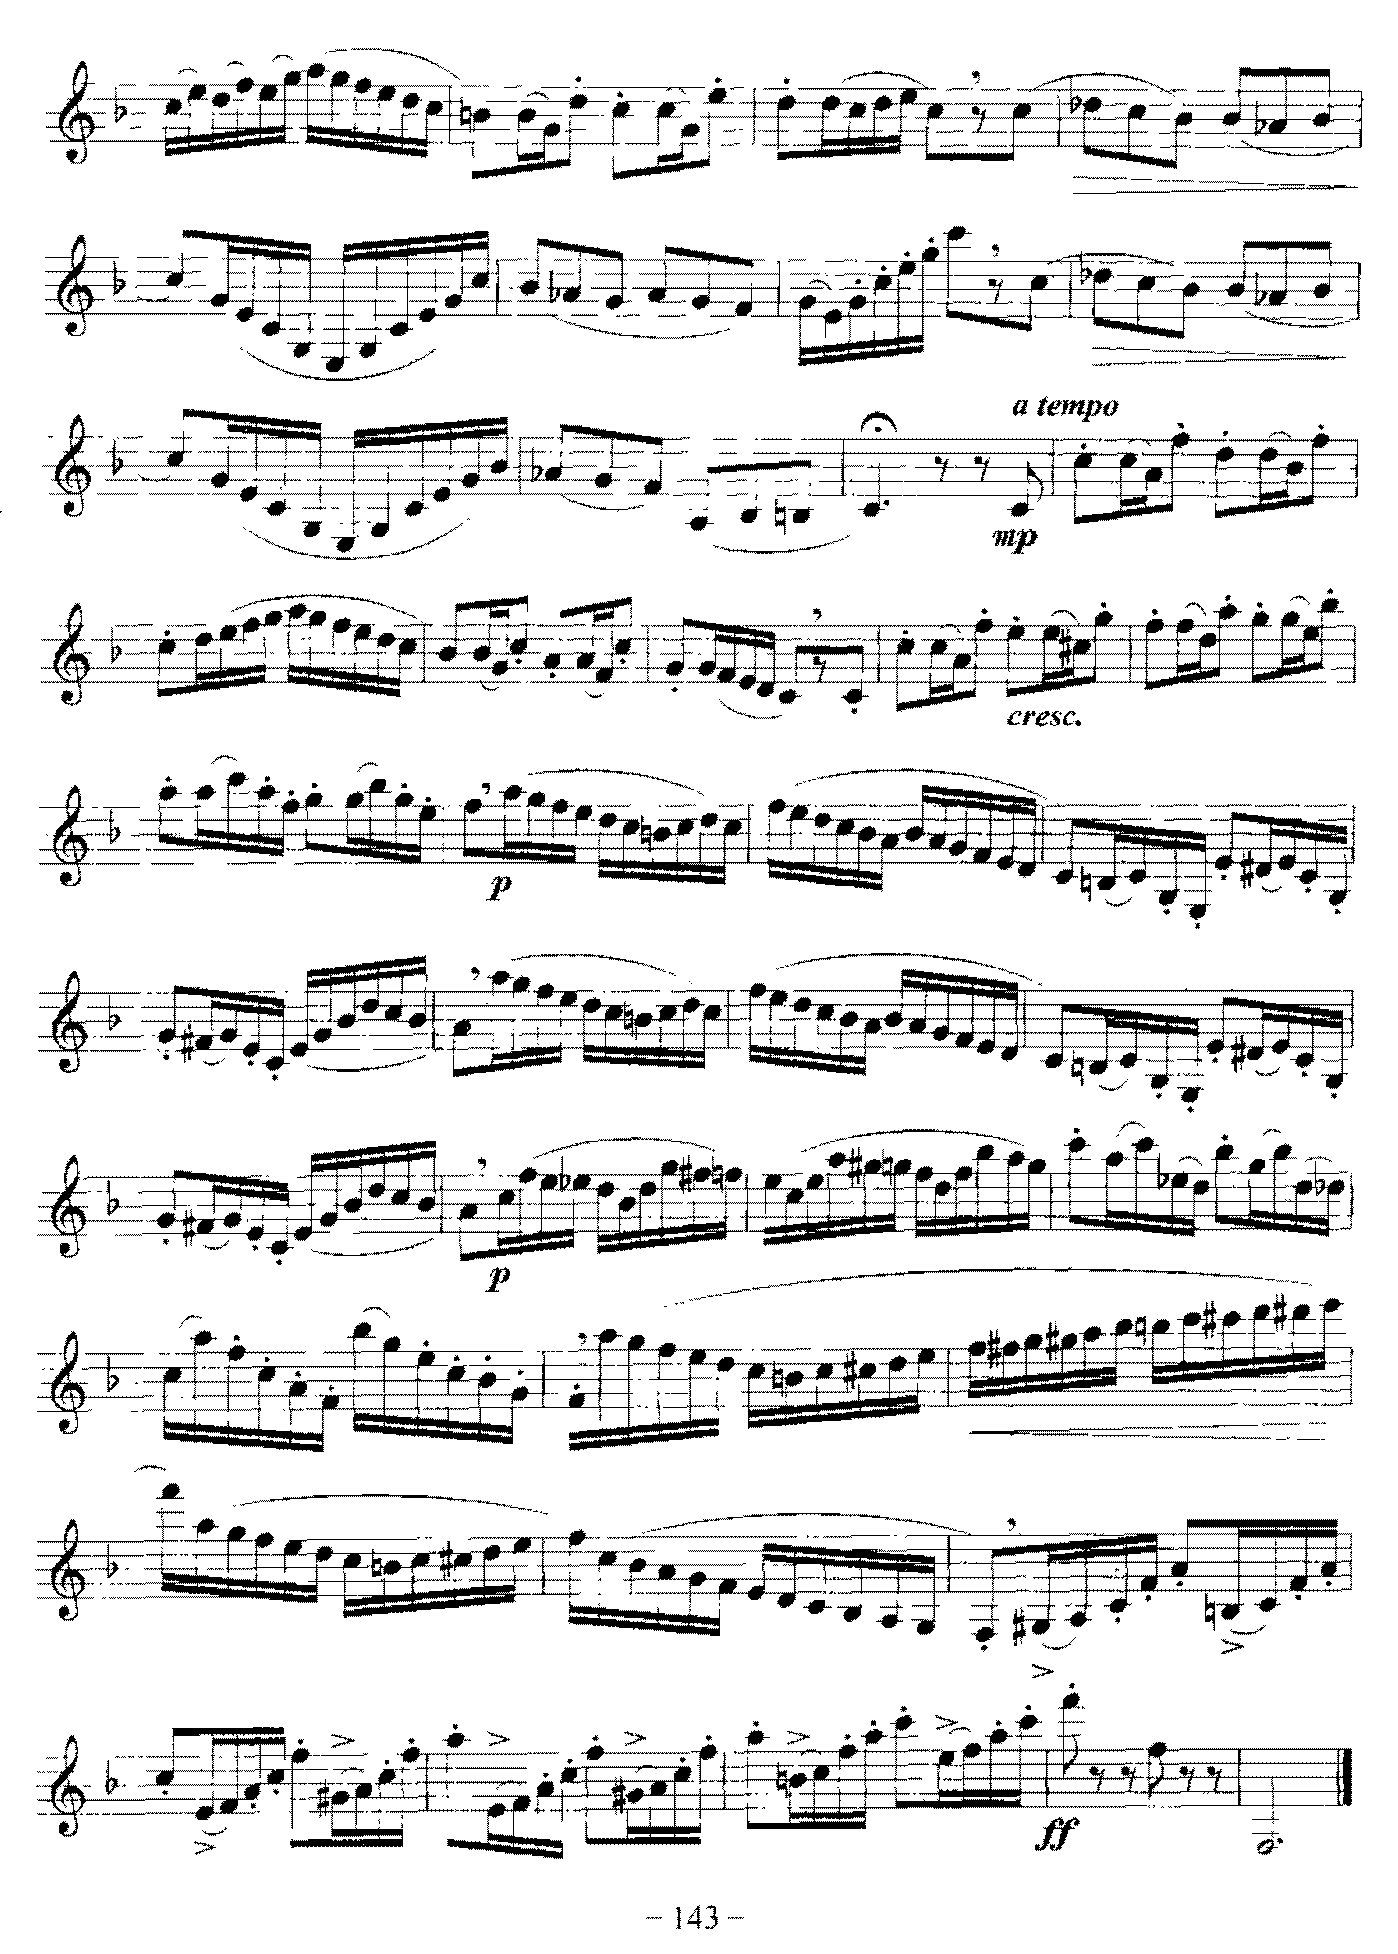 单簧管旋律性练习曲(1-53)